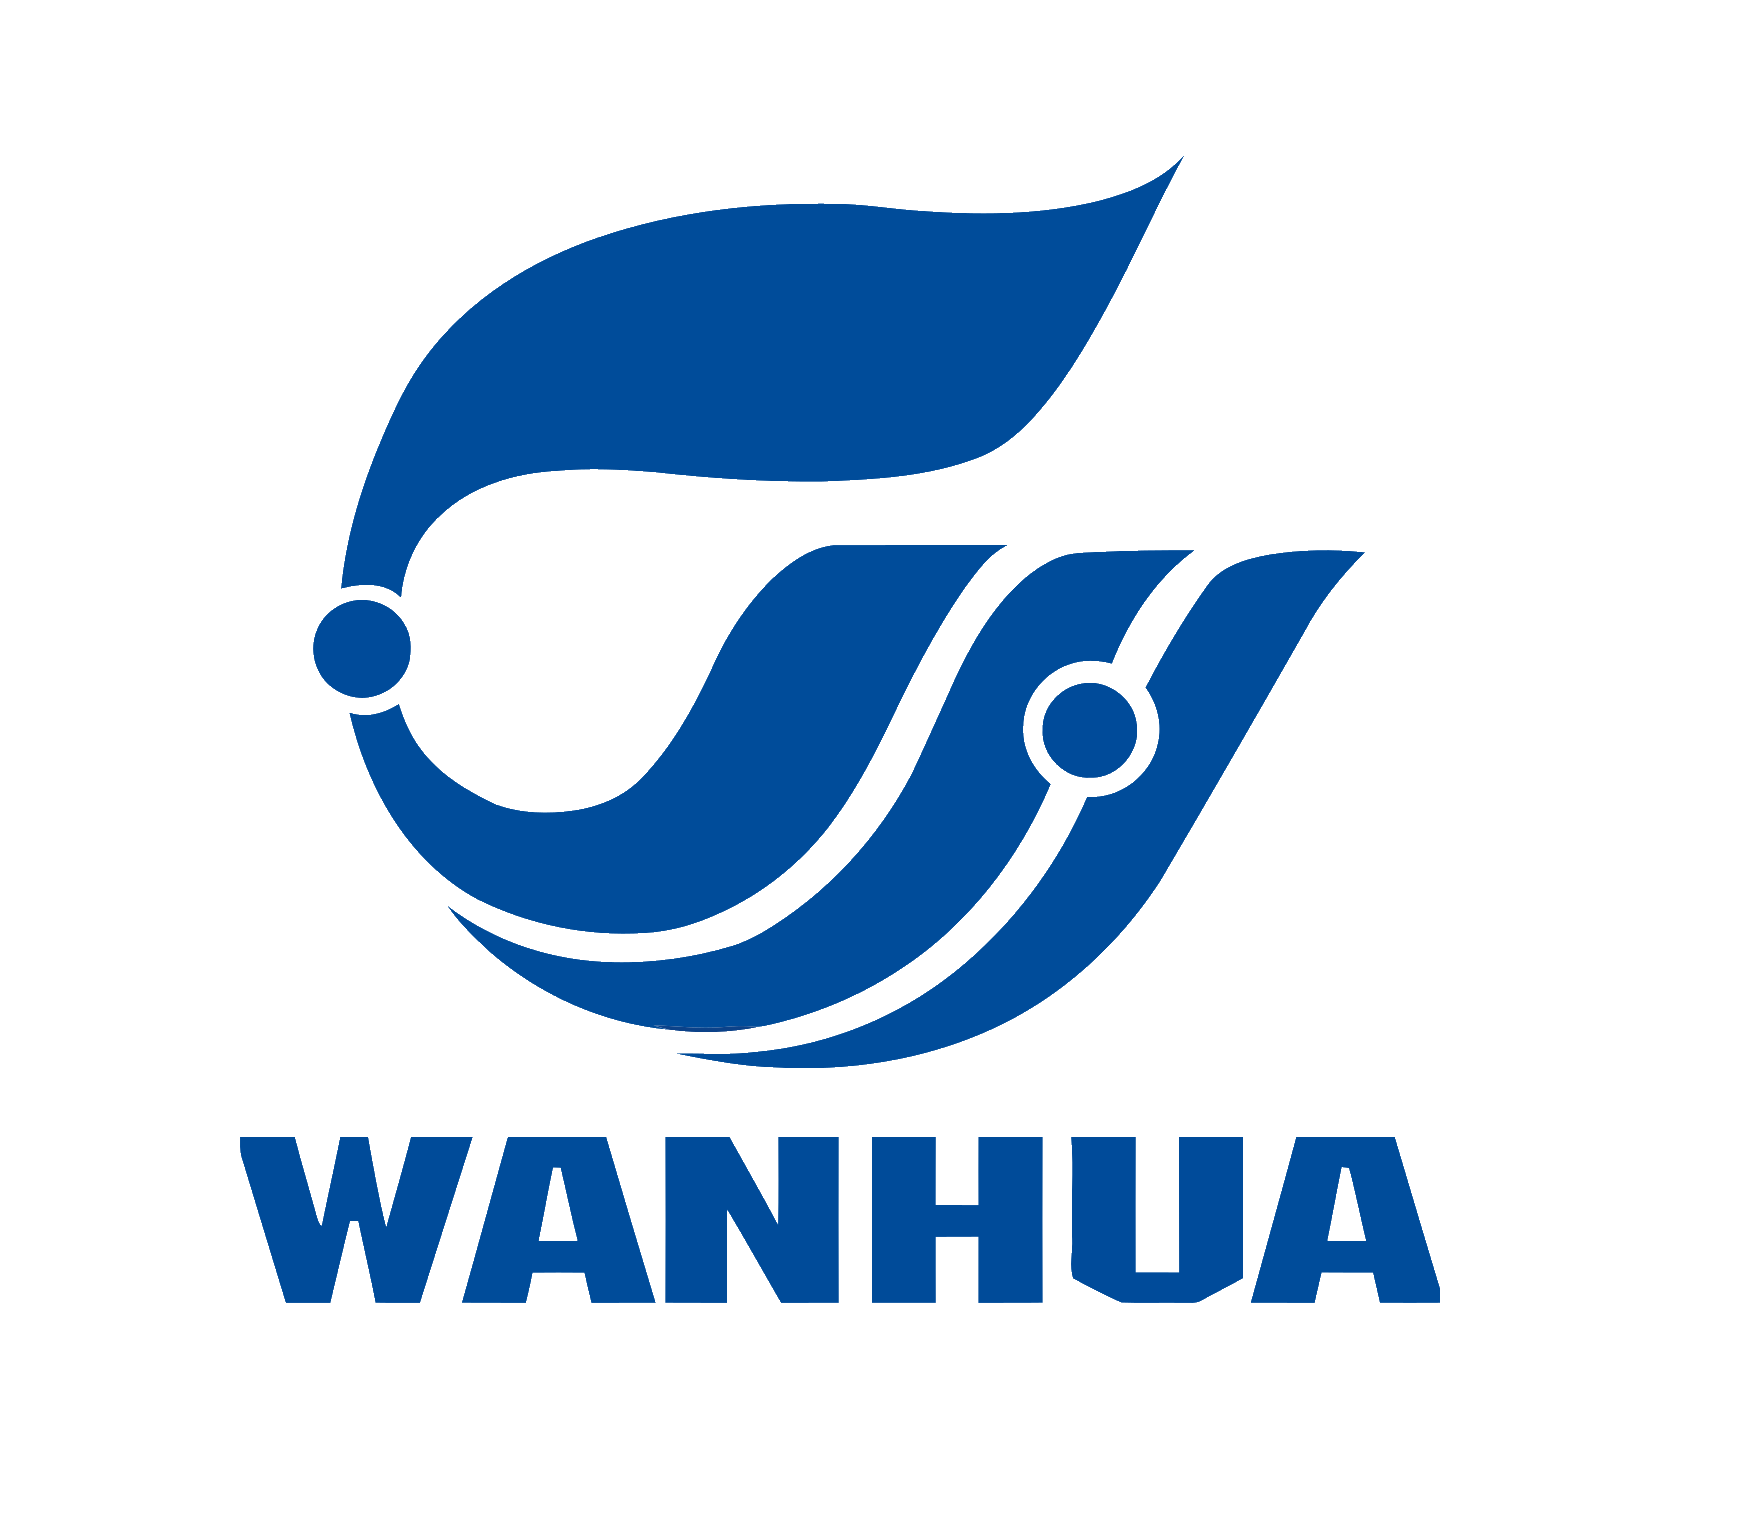 wanhua logo